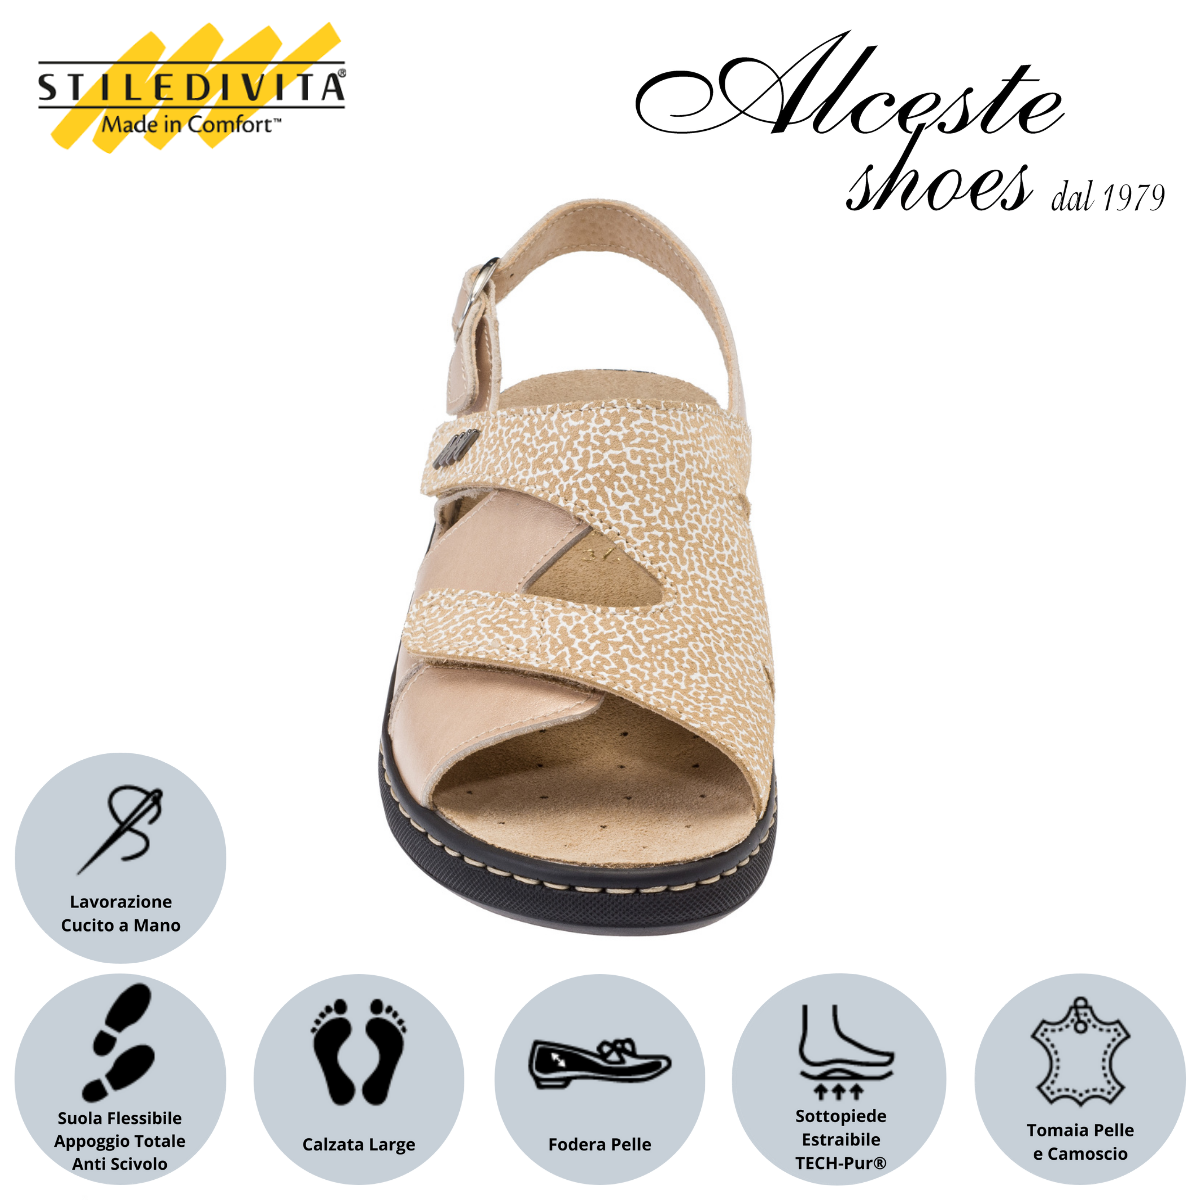 Sandalo con Strappi e Sottopiede Estraibile "Stiledivita" Art. 8195 Pelle Pietra e Camoscio Beige Alceste Shoes 35